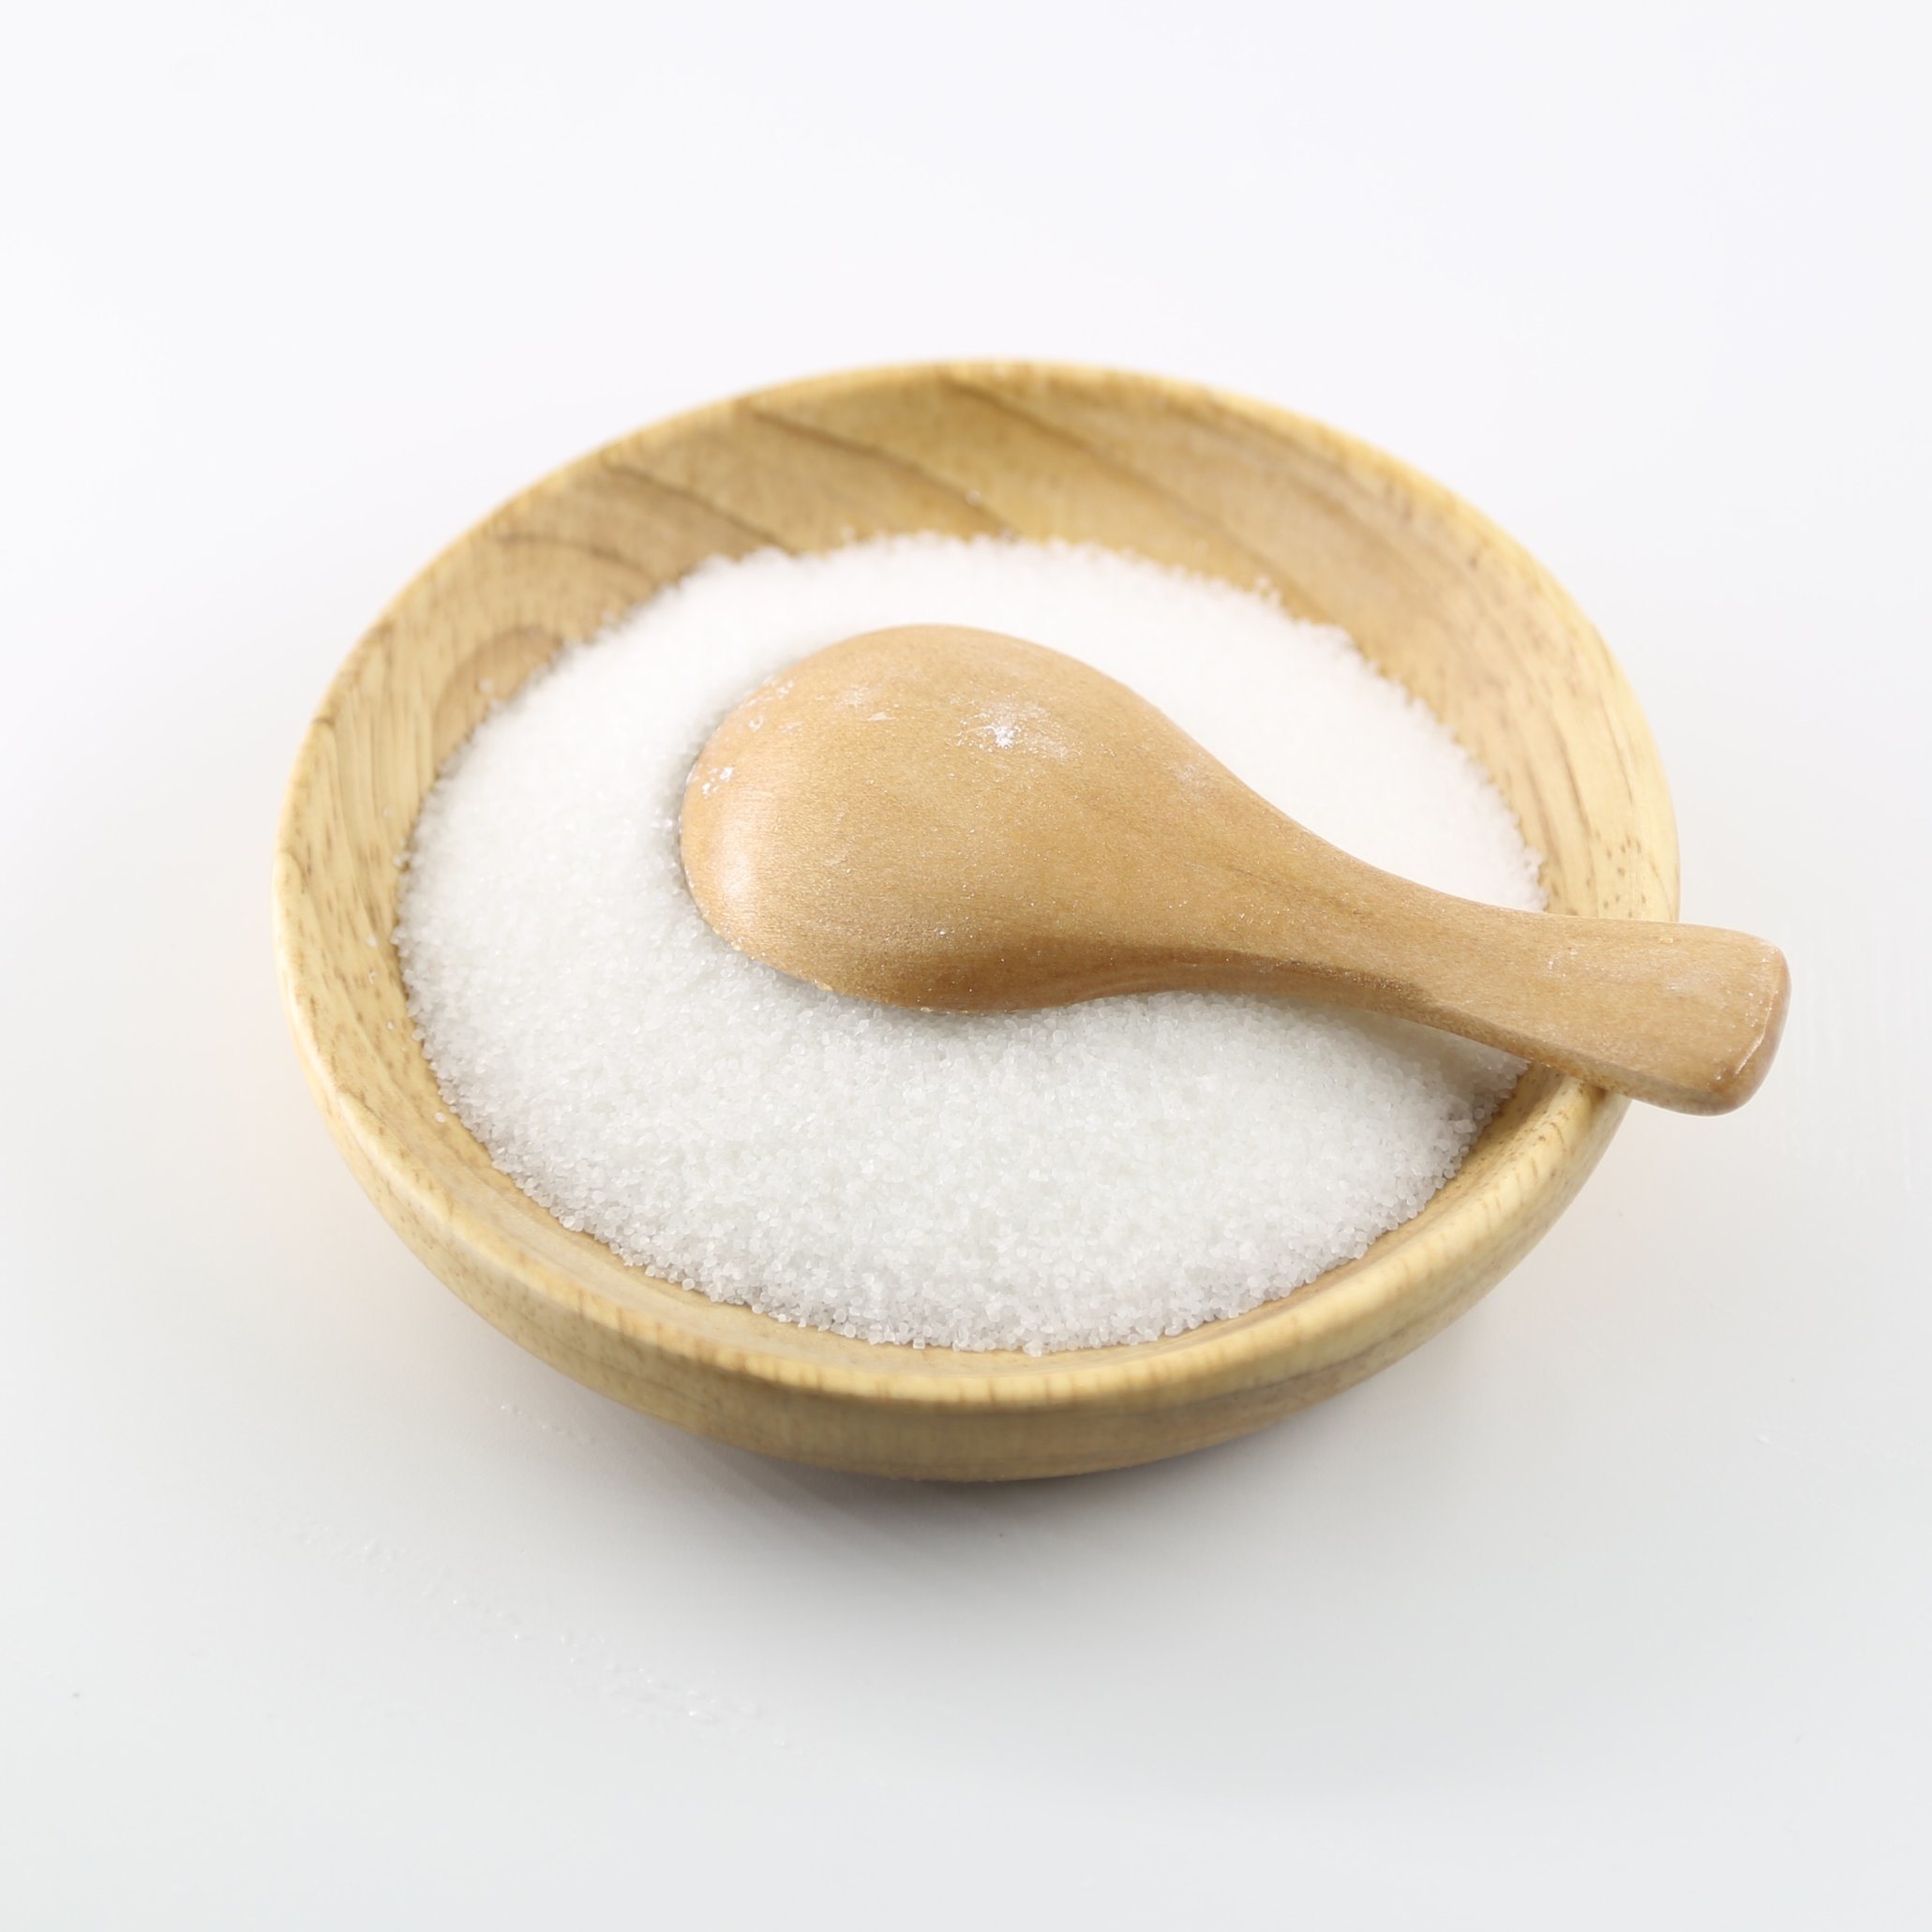 Ingrédients de qualité alimentaire Acide citrical recouvert d'agent anti-collant pour les bonbons doux